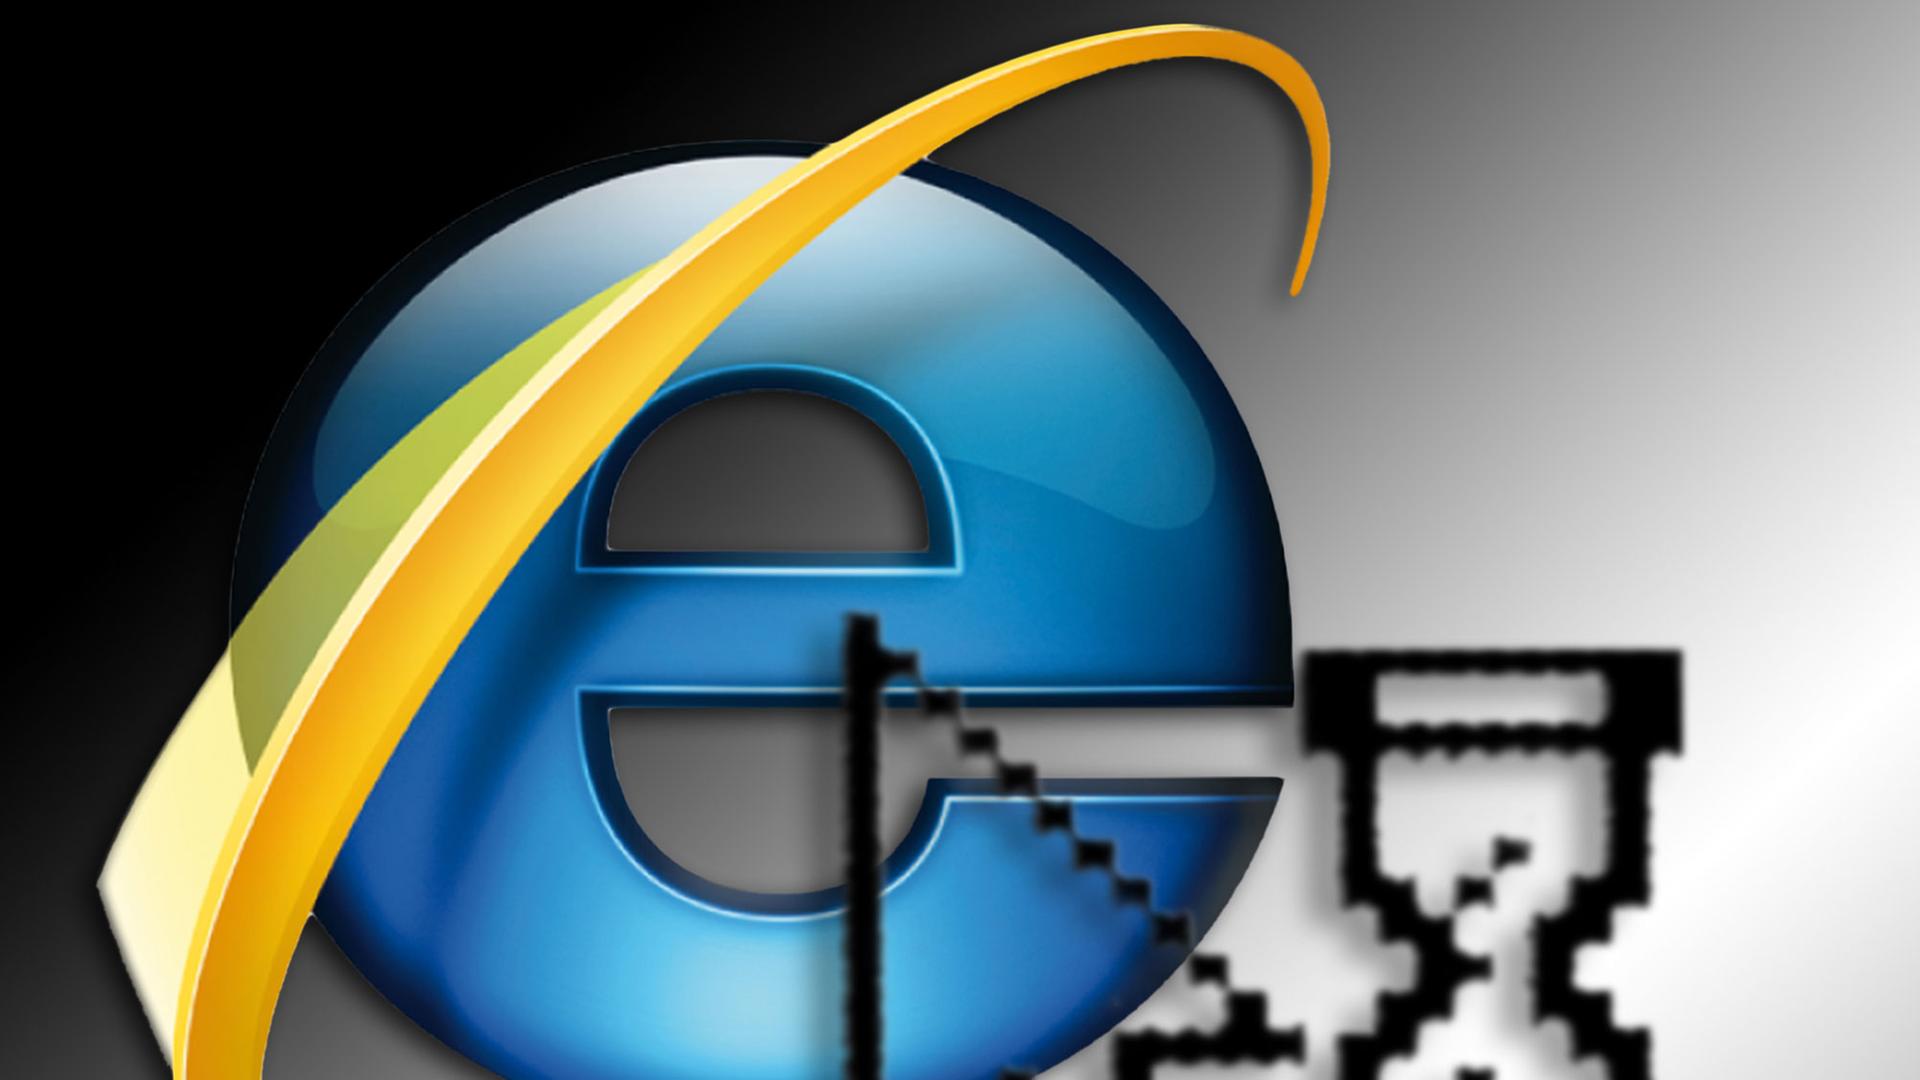 Das Programmsymbol des "Internet Explorer" von Windows.